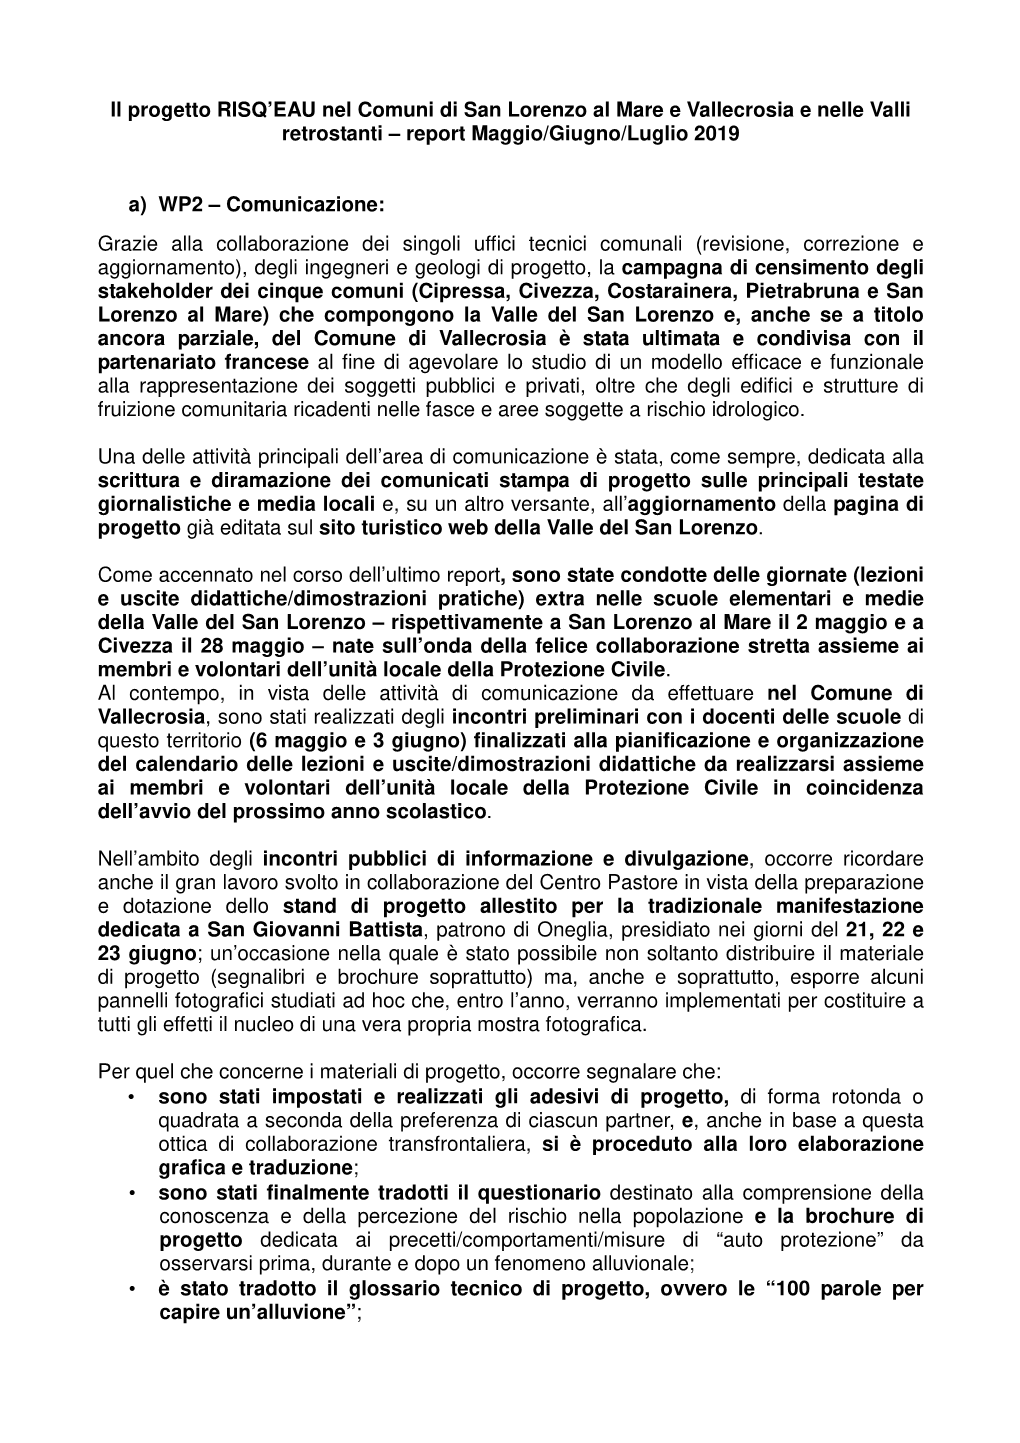 Report Risq'eau Maggio, Giugno E Luglio 2019 ITA